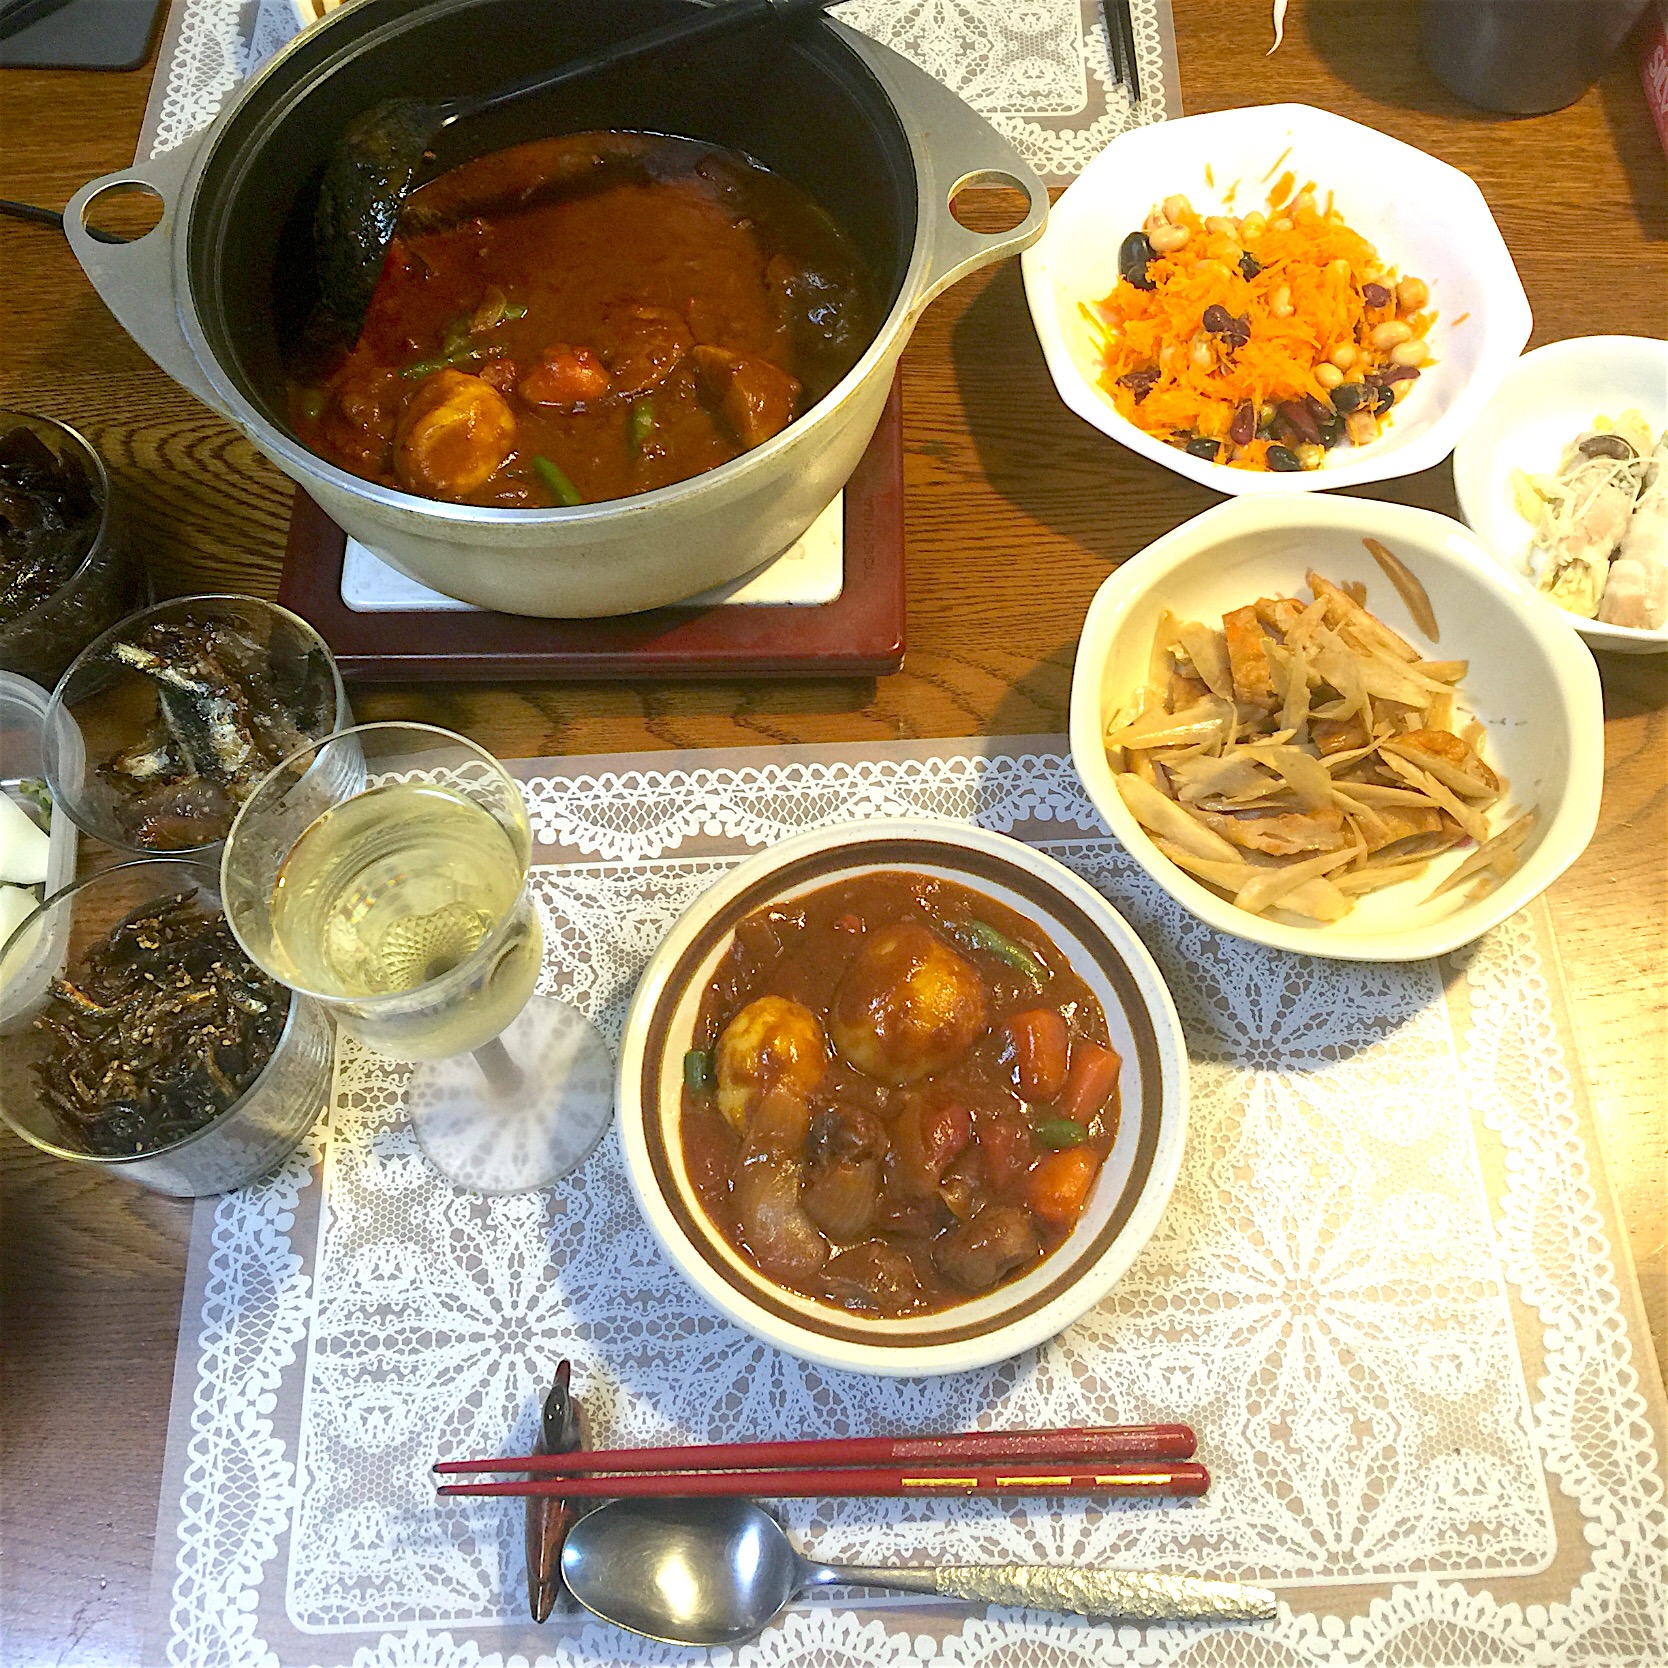 牛スネ肉のシチュー、人参と豆のサラダ、
残り物、常備菜